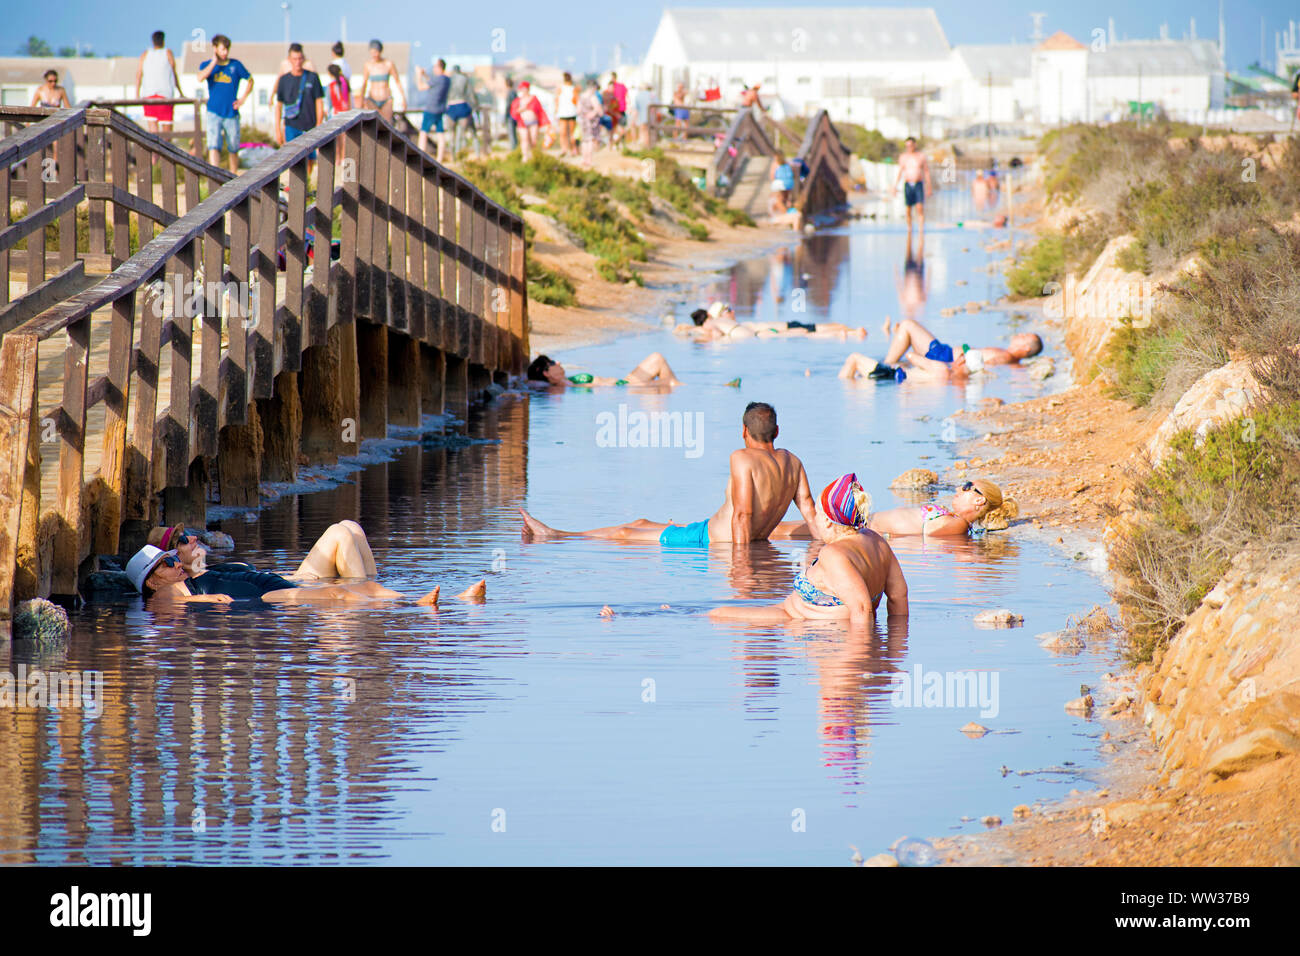 San Pedro, Spanien, 23. Juli 2019: Menschen Schlamm Baden am Strand von Villananitos in Spanien. Sommer Gesundheit Betreuung oder Pflege der Haut mit Heilschlamm. Behandlungen. Stockfoto